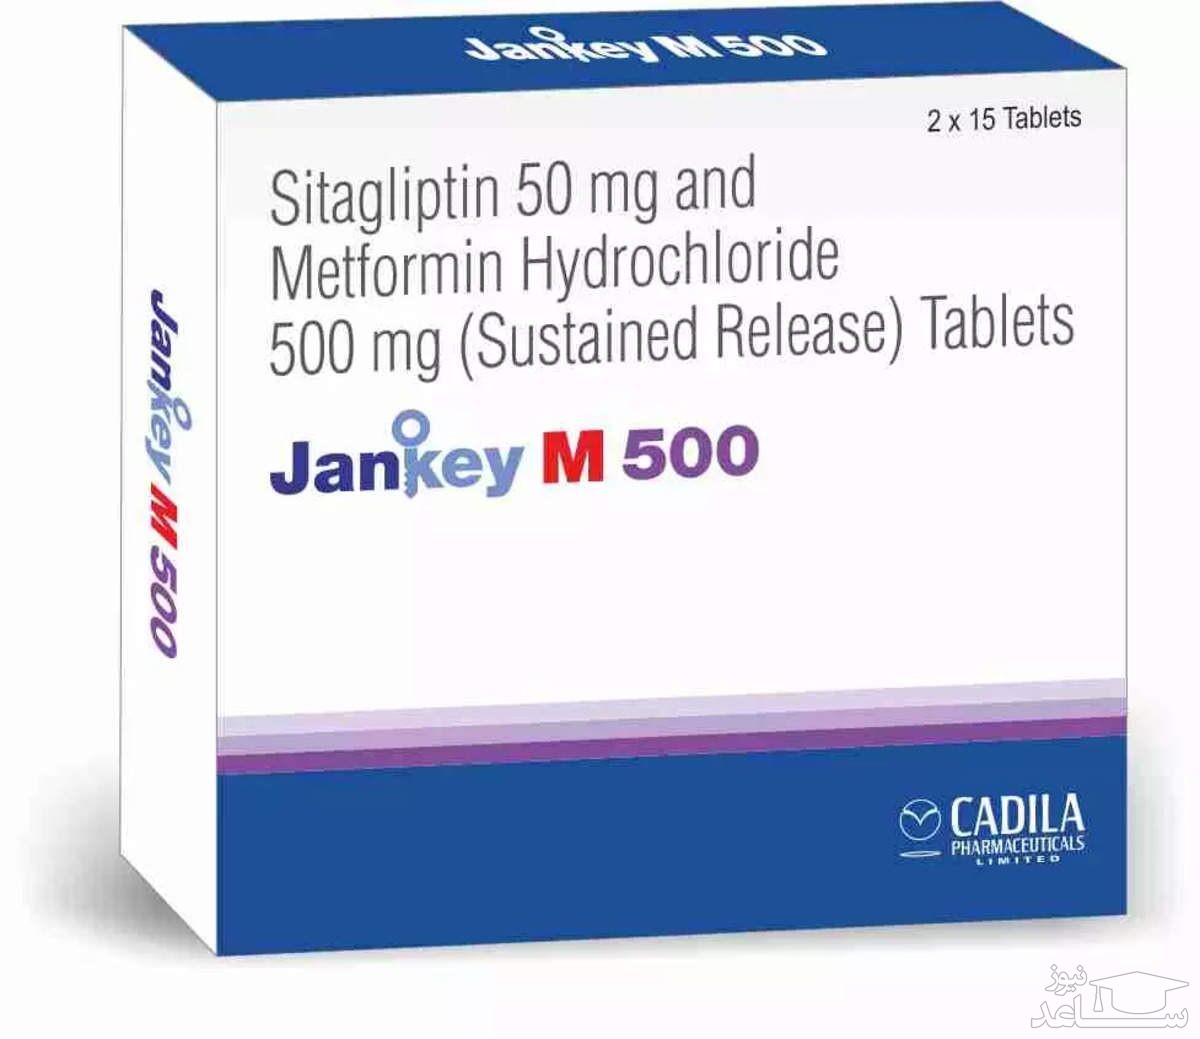 میزان و نحوه مصرف داروی سیتاگلیپتین